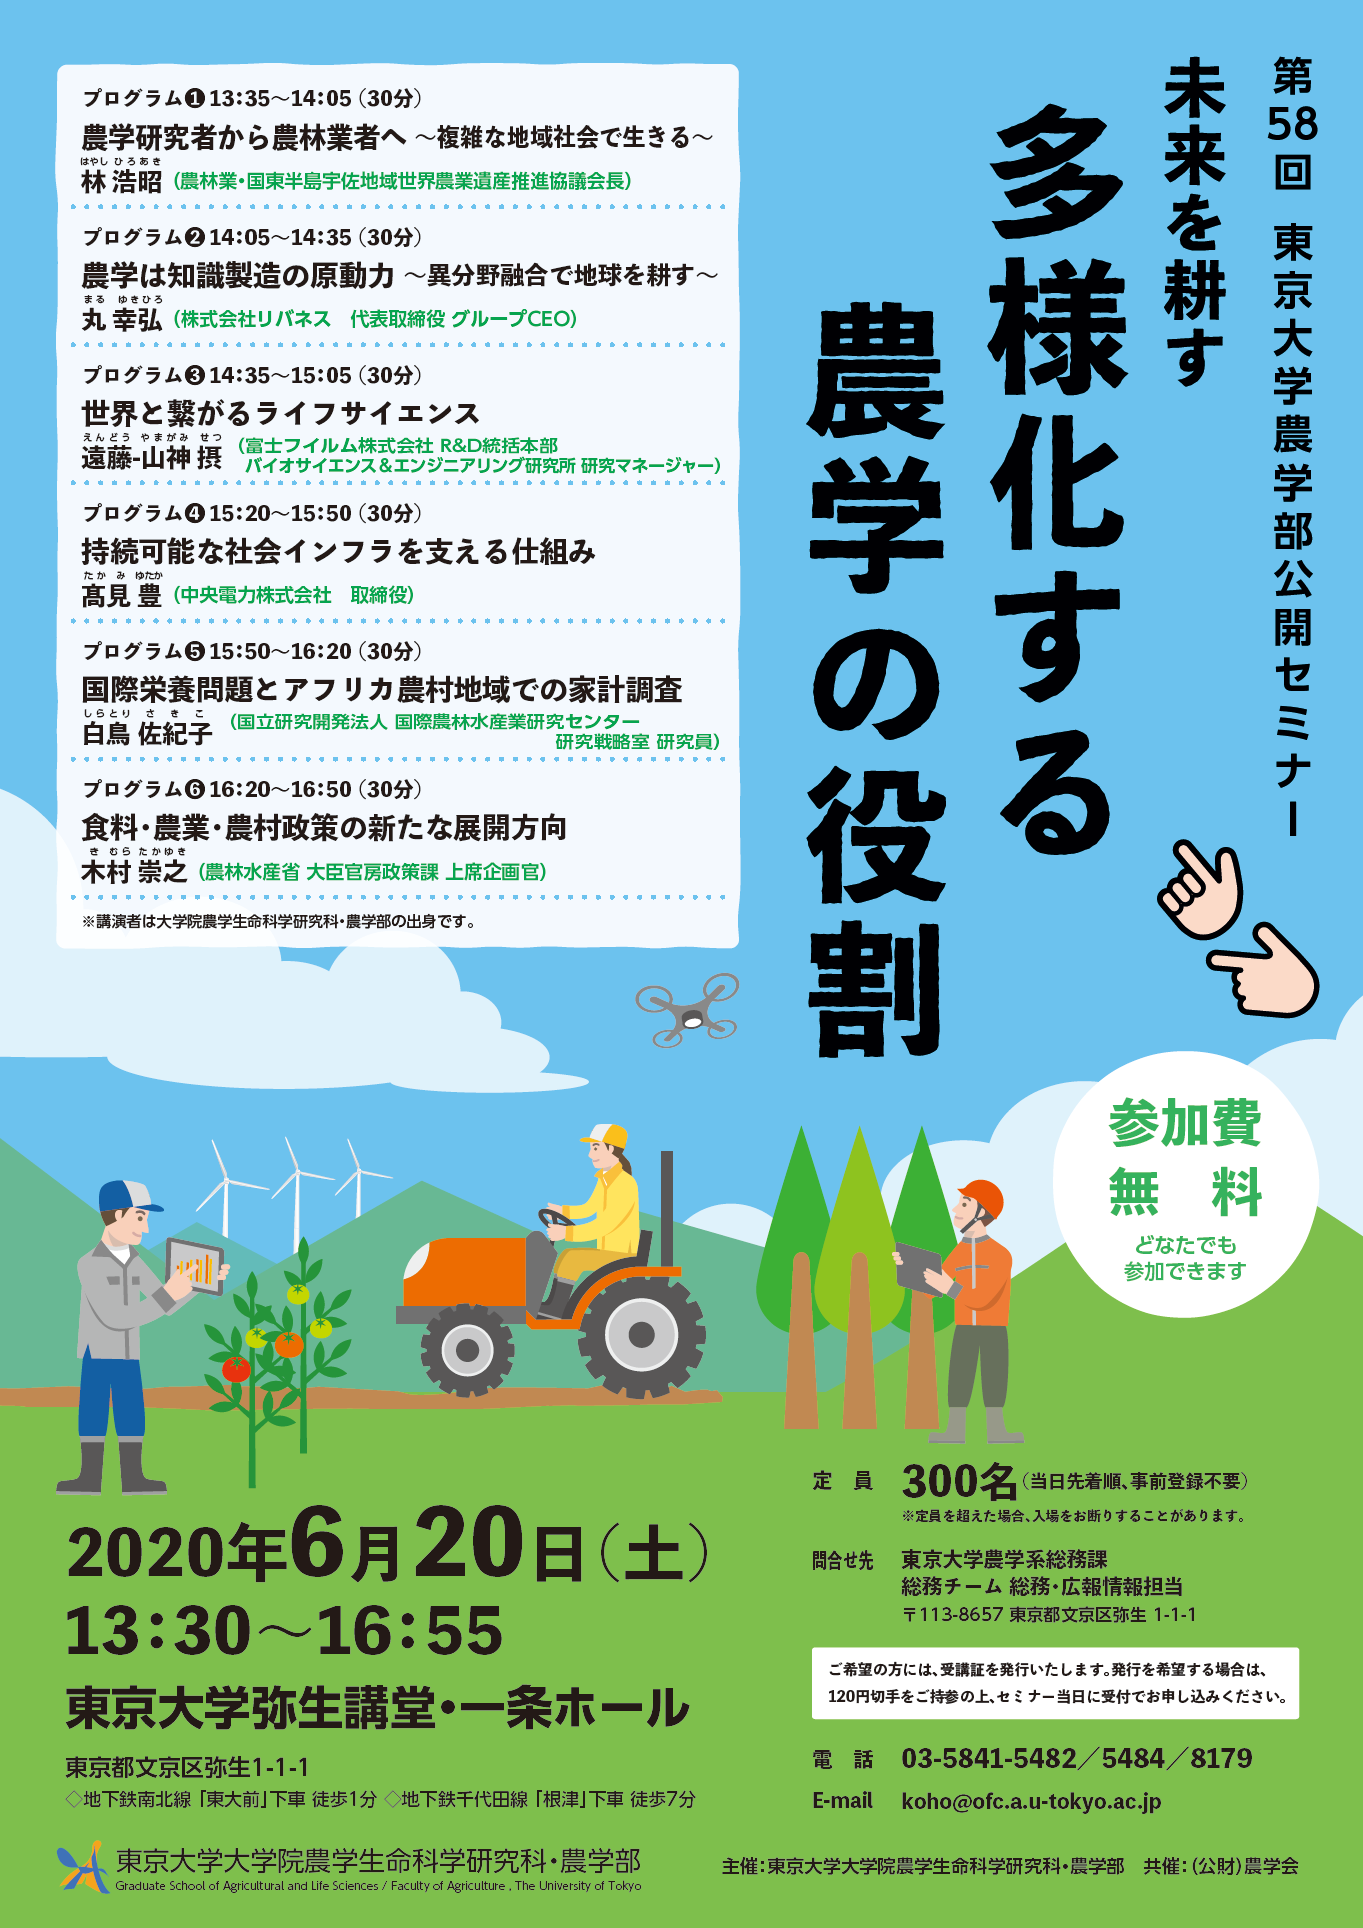 東京大学農学部公開セミナー「未来を耕す -- 多様化する農学の役割」の開催